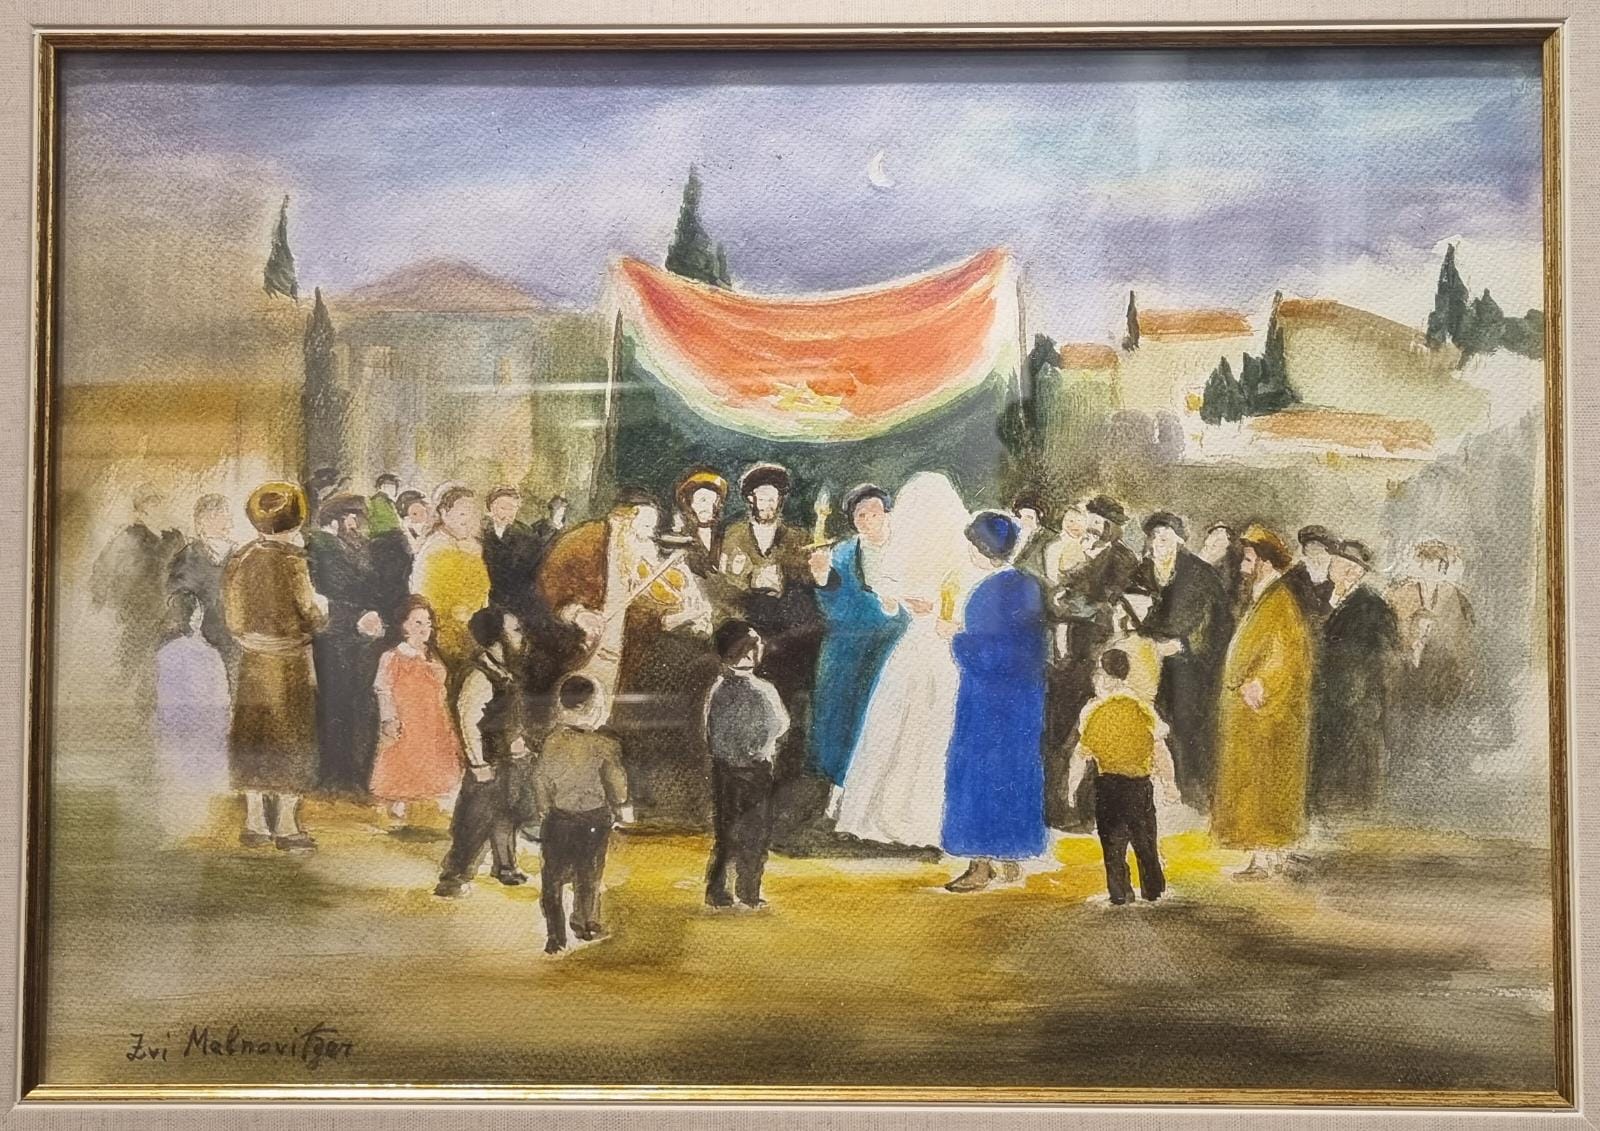 Zvi Malnovitzer - Wedding in Jerusalem - watercolor on paper - 34x48 cm